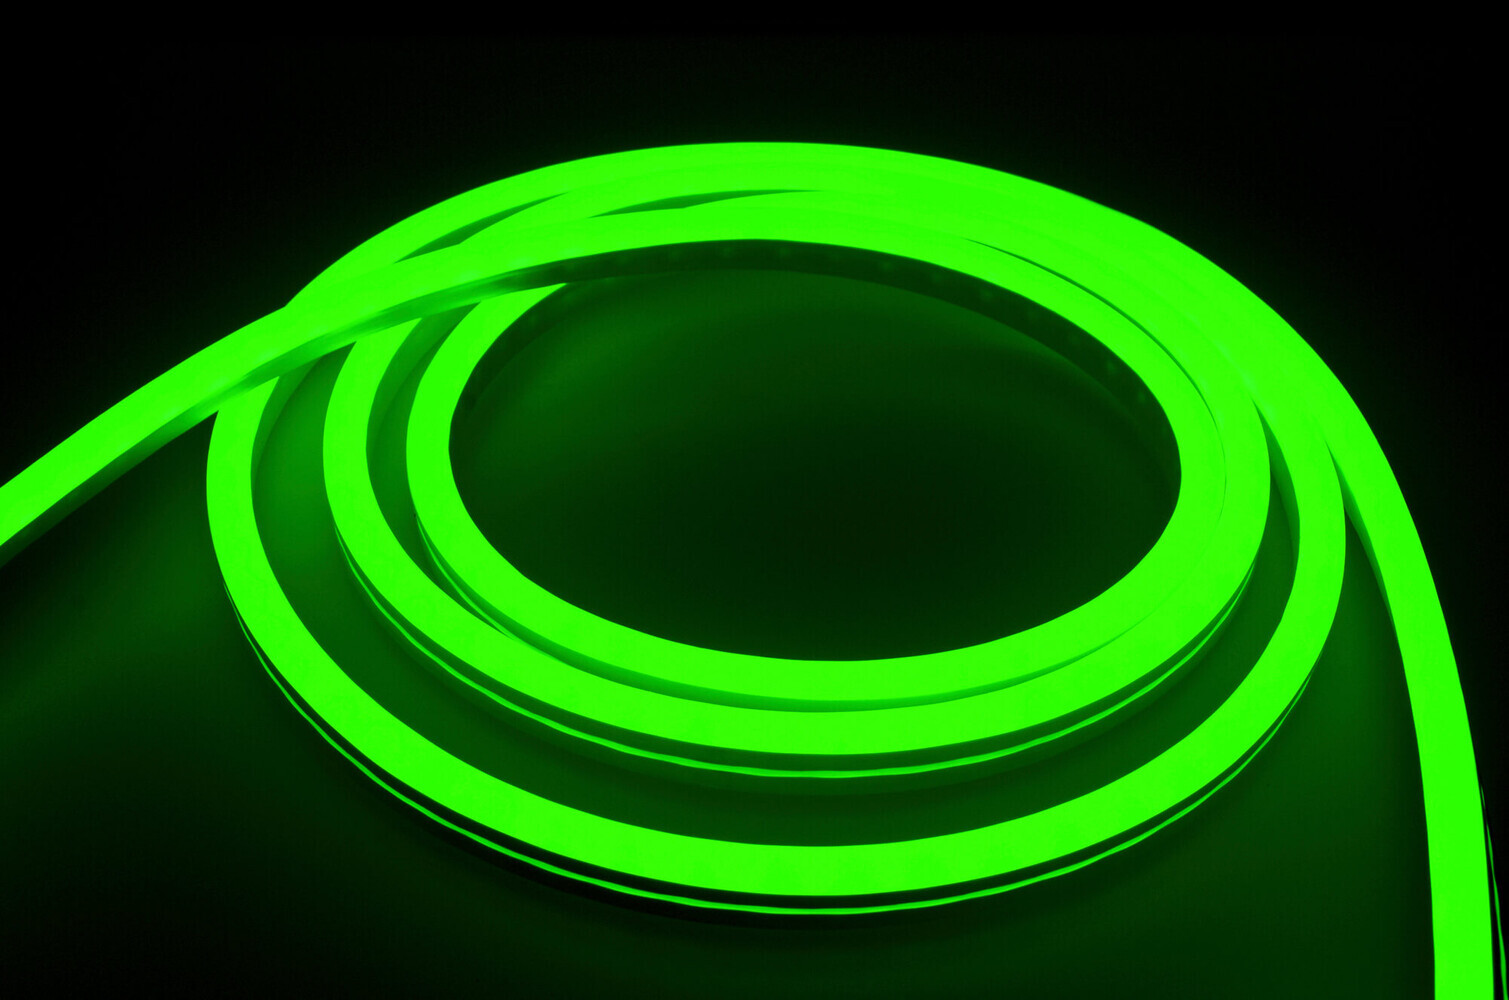 Hochwertiger RGB LED Streifen von LED Universum mit professionellem NeonFlex Design